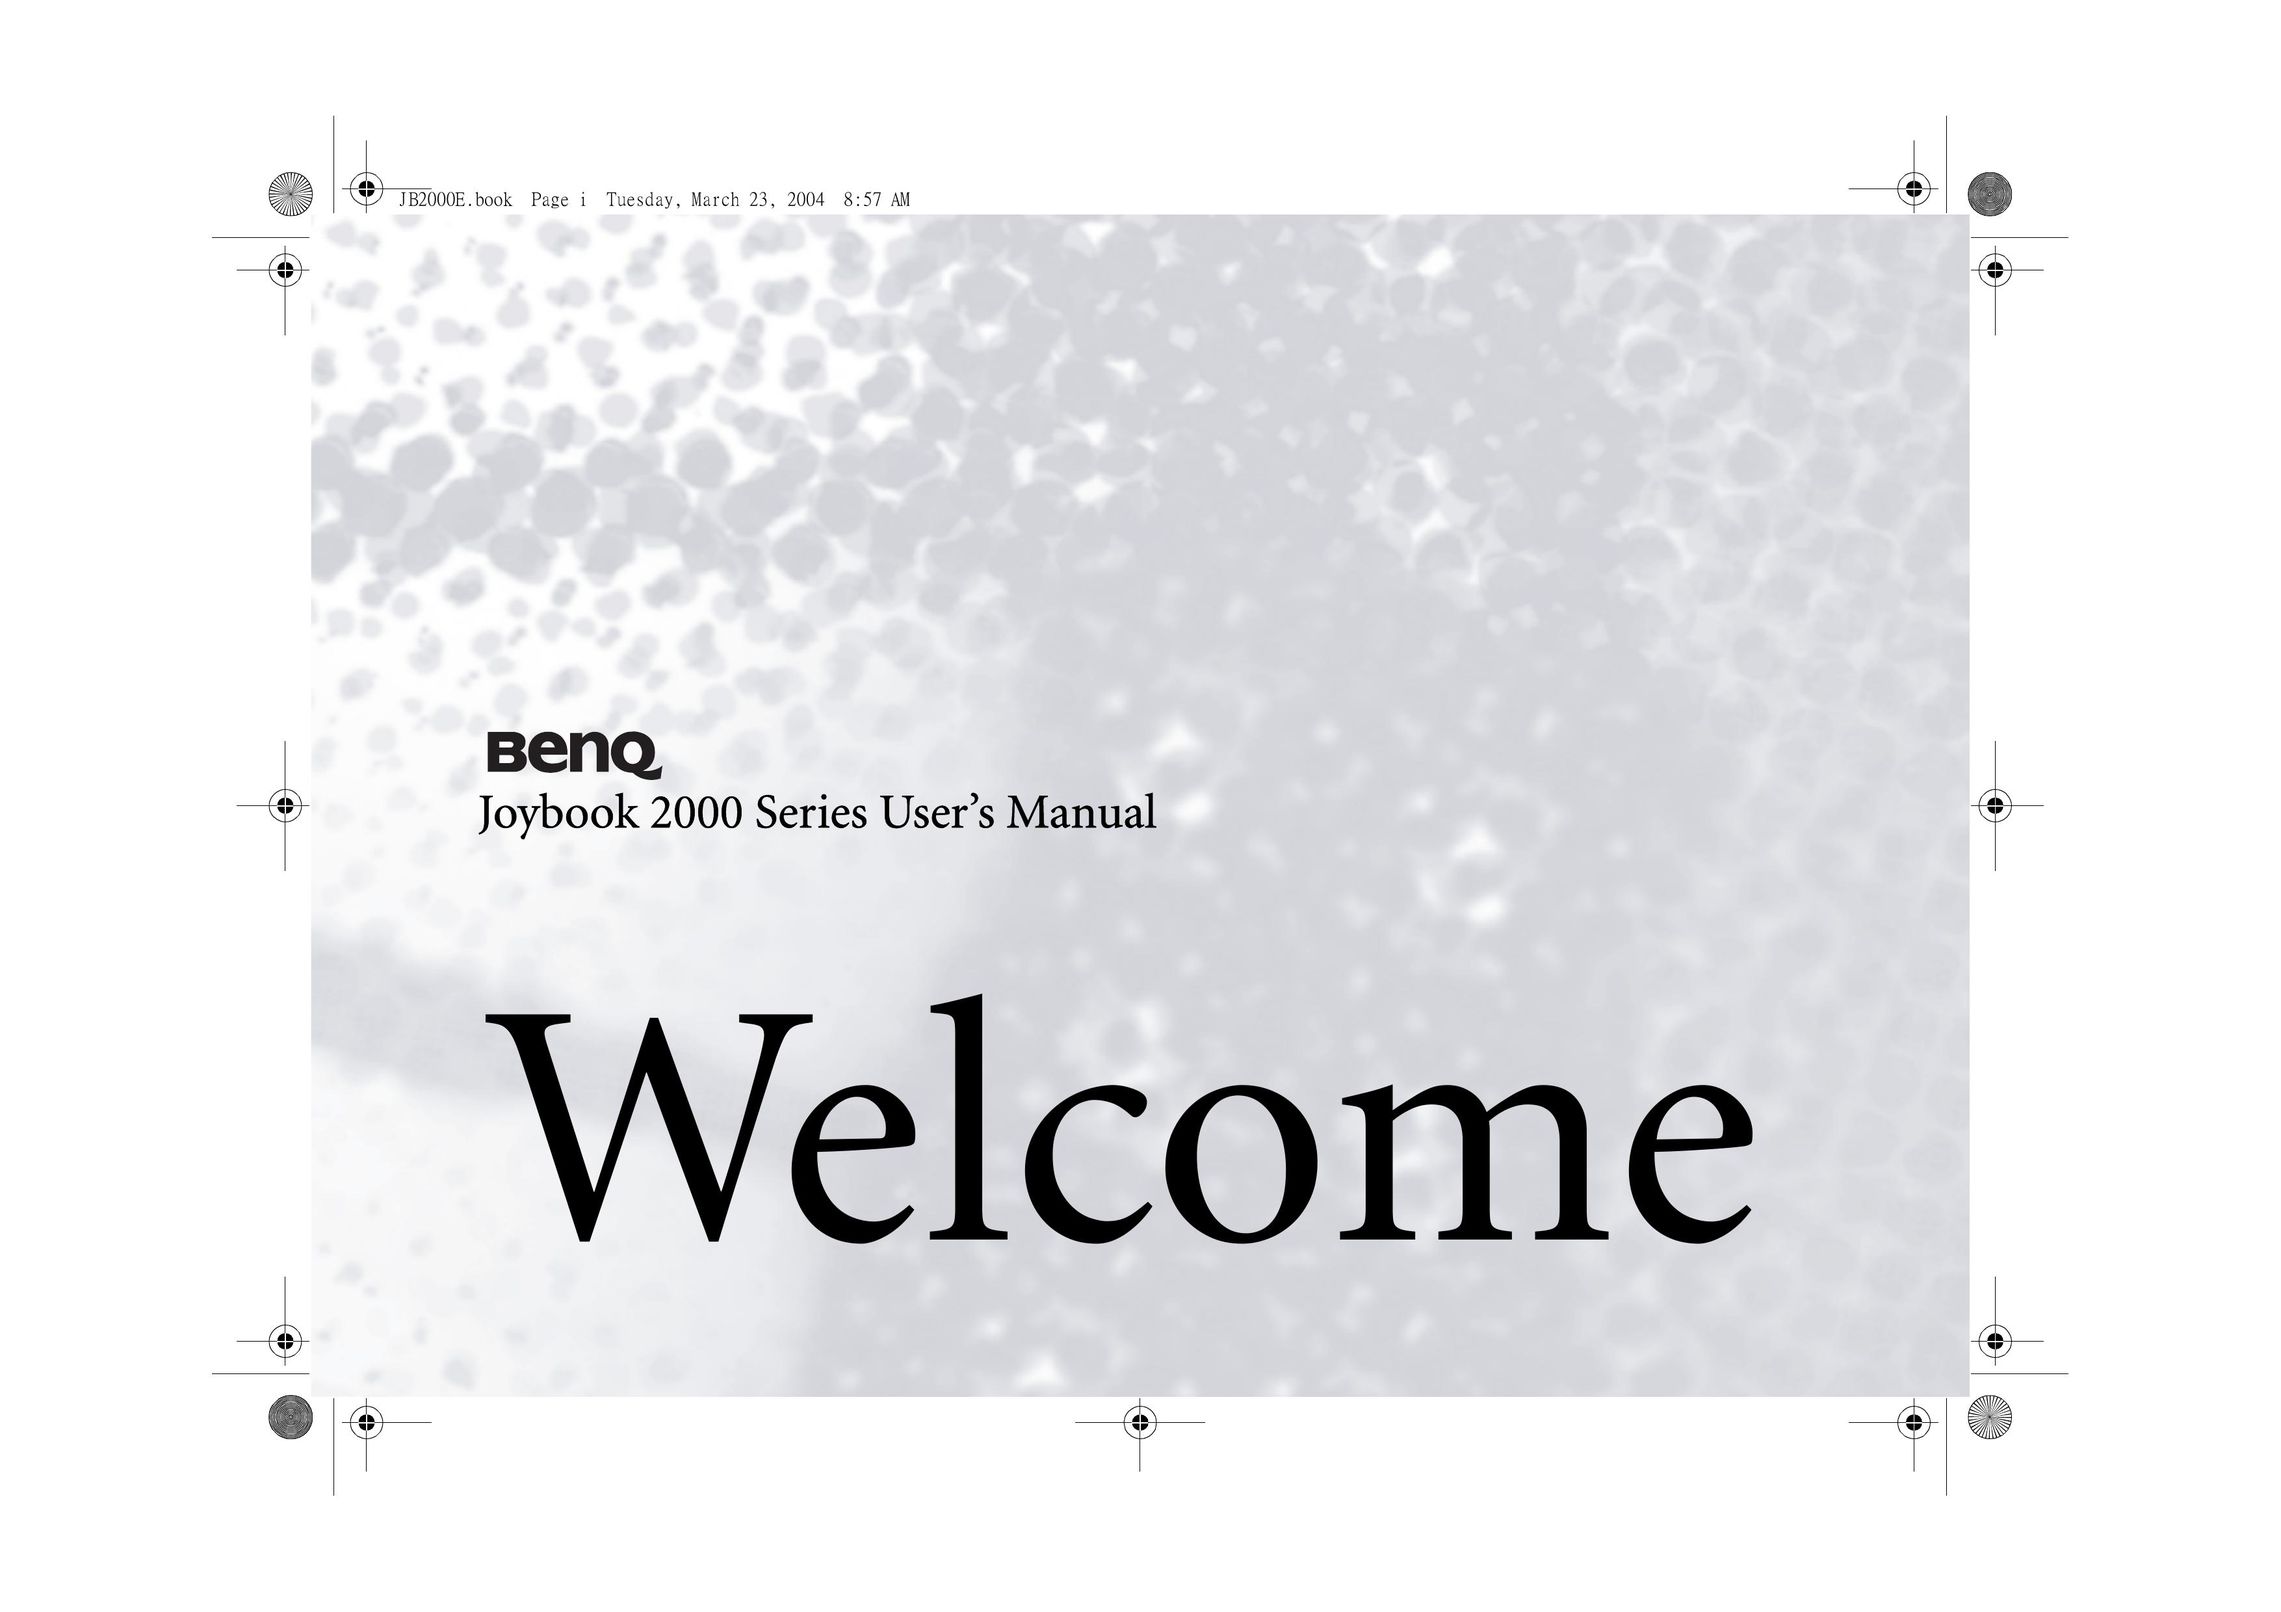 BenQ 2000 Series Laptop User Manual